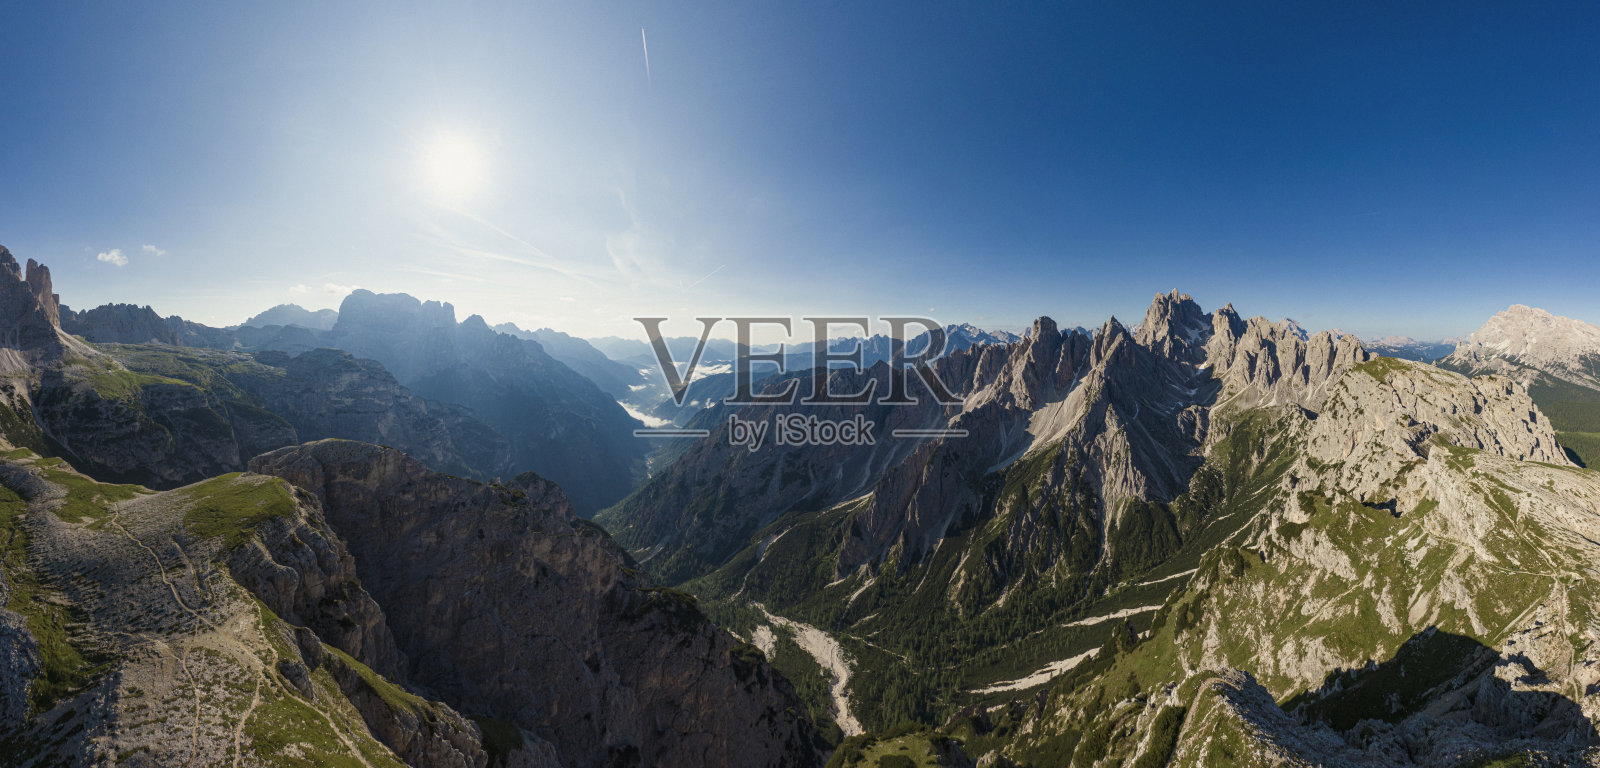 意大利拉瓦雷多地区三座山峰上的白云石照片摄影图片